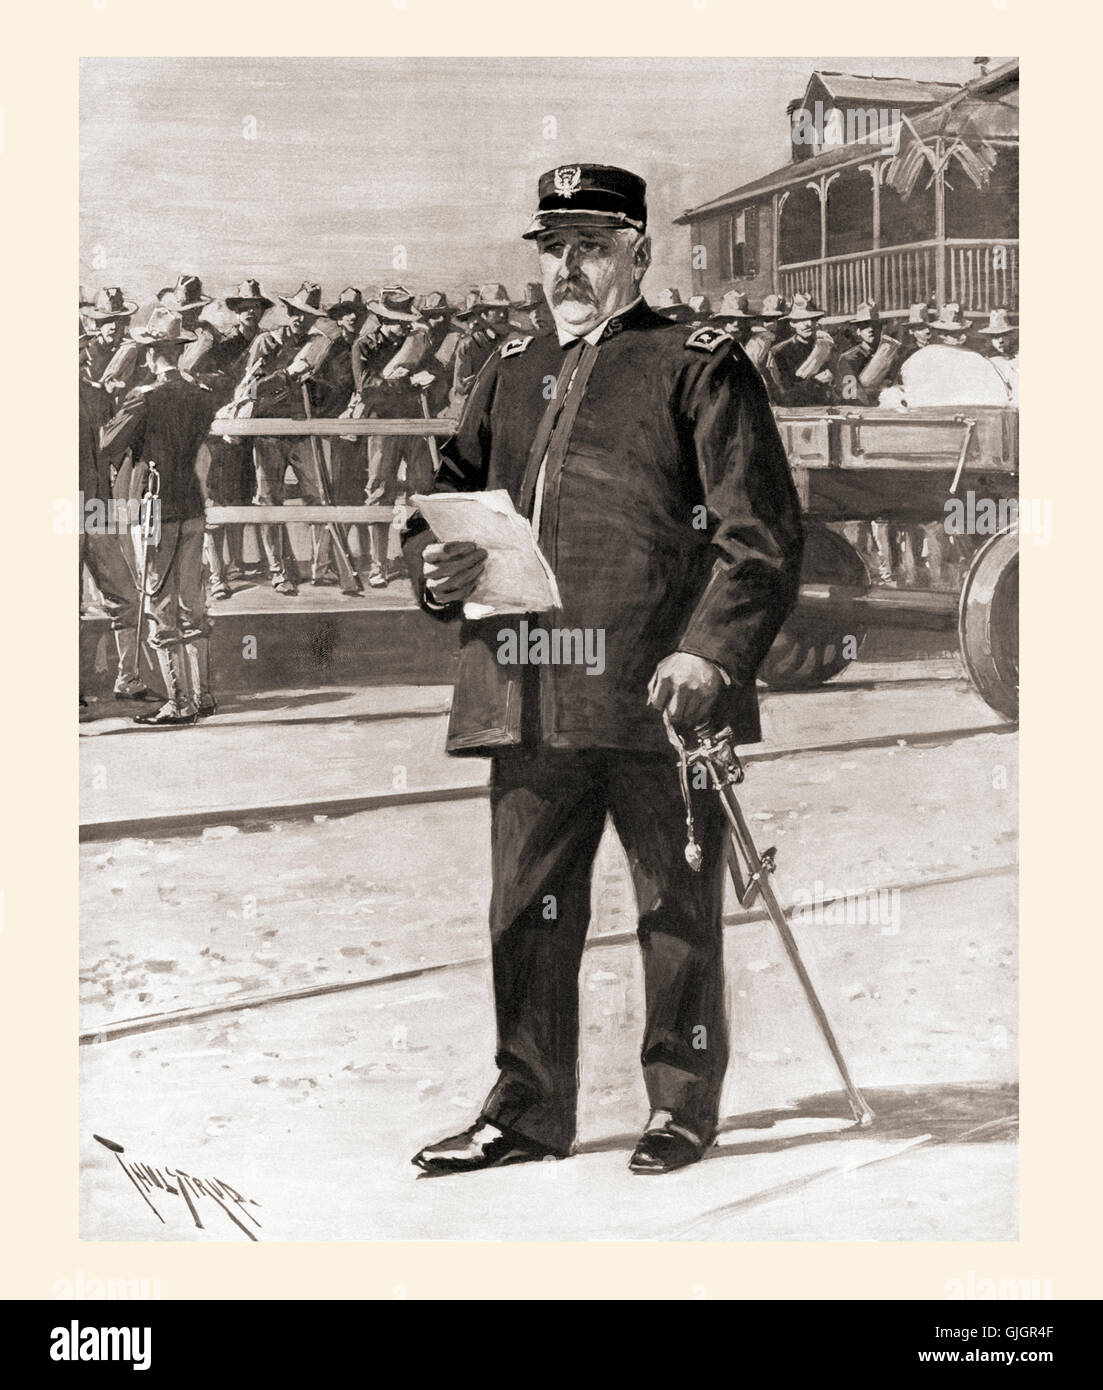 Generalmajor William Shafter Kommandeur des 5. Armeekorps, Regie die Einschiffung der Truppen am Hafen Tampa, Florida, Vereinigte Staaten von Amerika, in Vorbereitung für die Invasion von Kuba während des Spanisch-Amerikanischen Krieges von 1898.  William Rufus Shafter, 1835 – 1906. Amerikanische Major General. Stockfoto